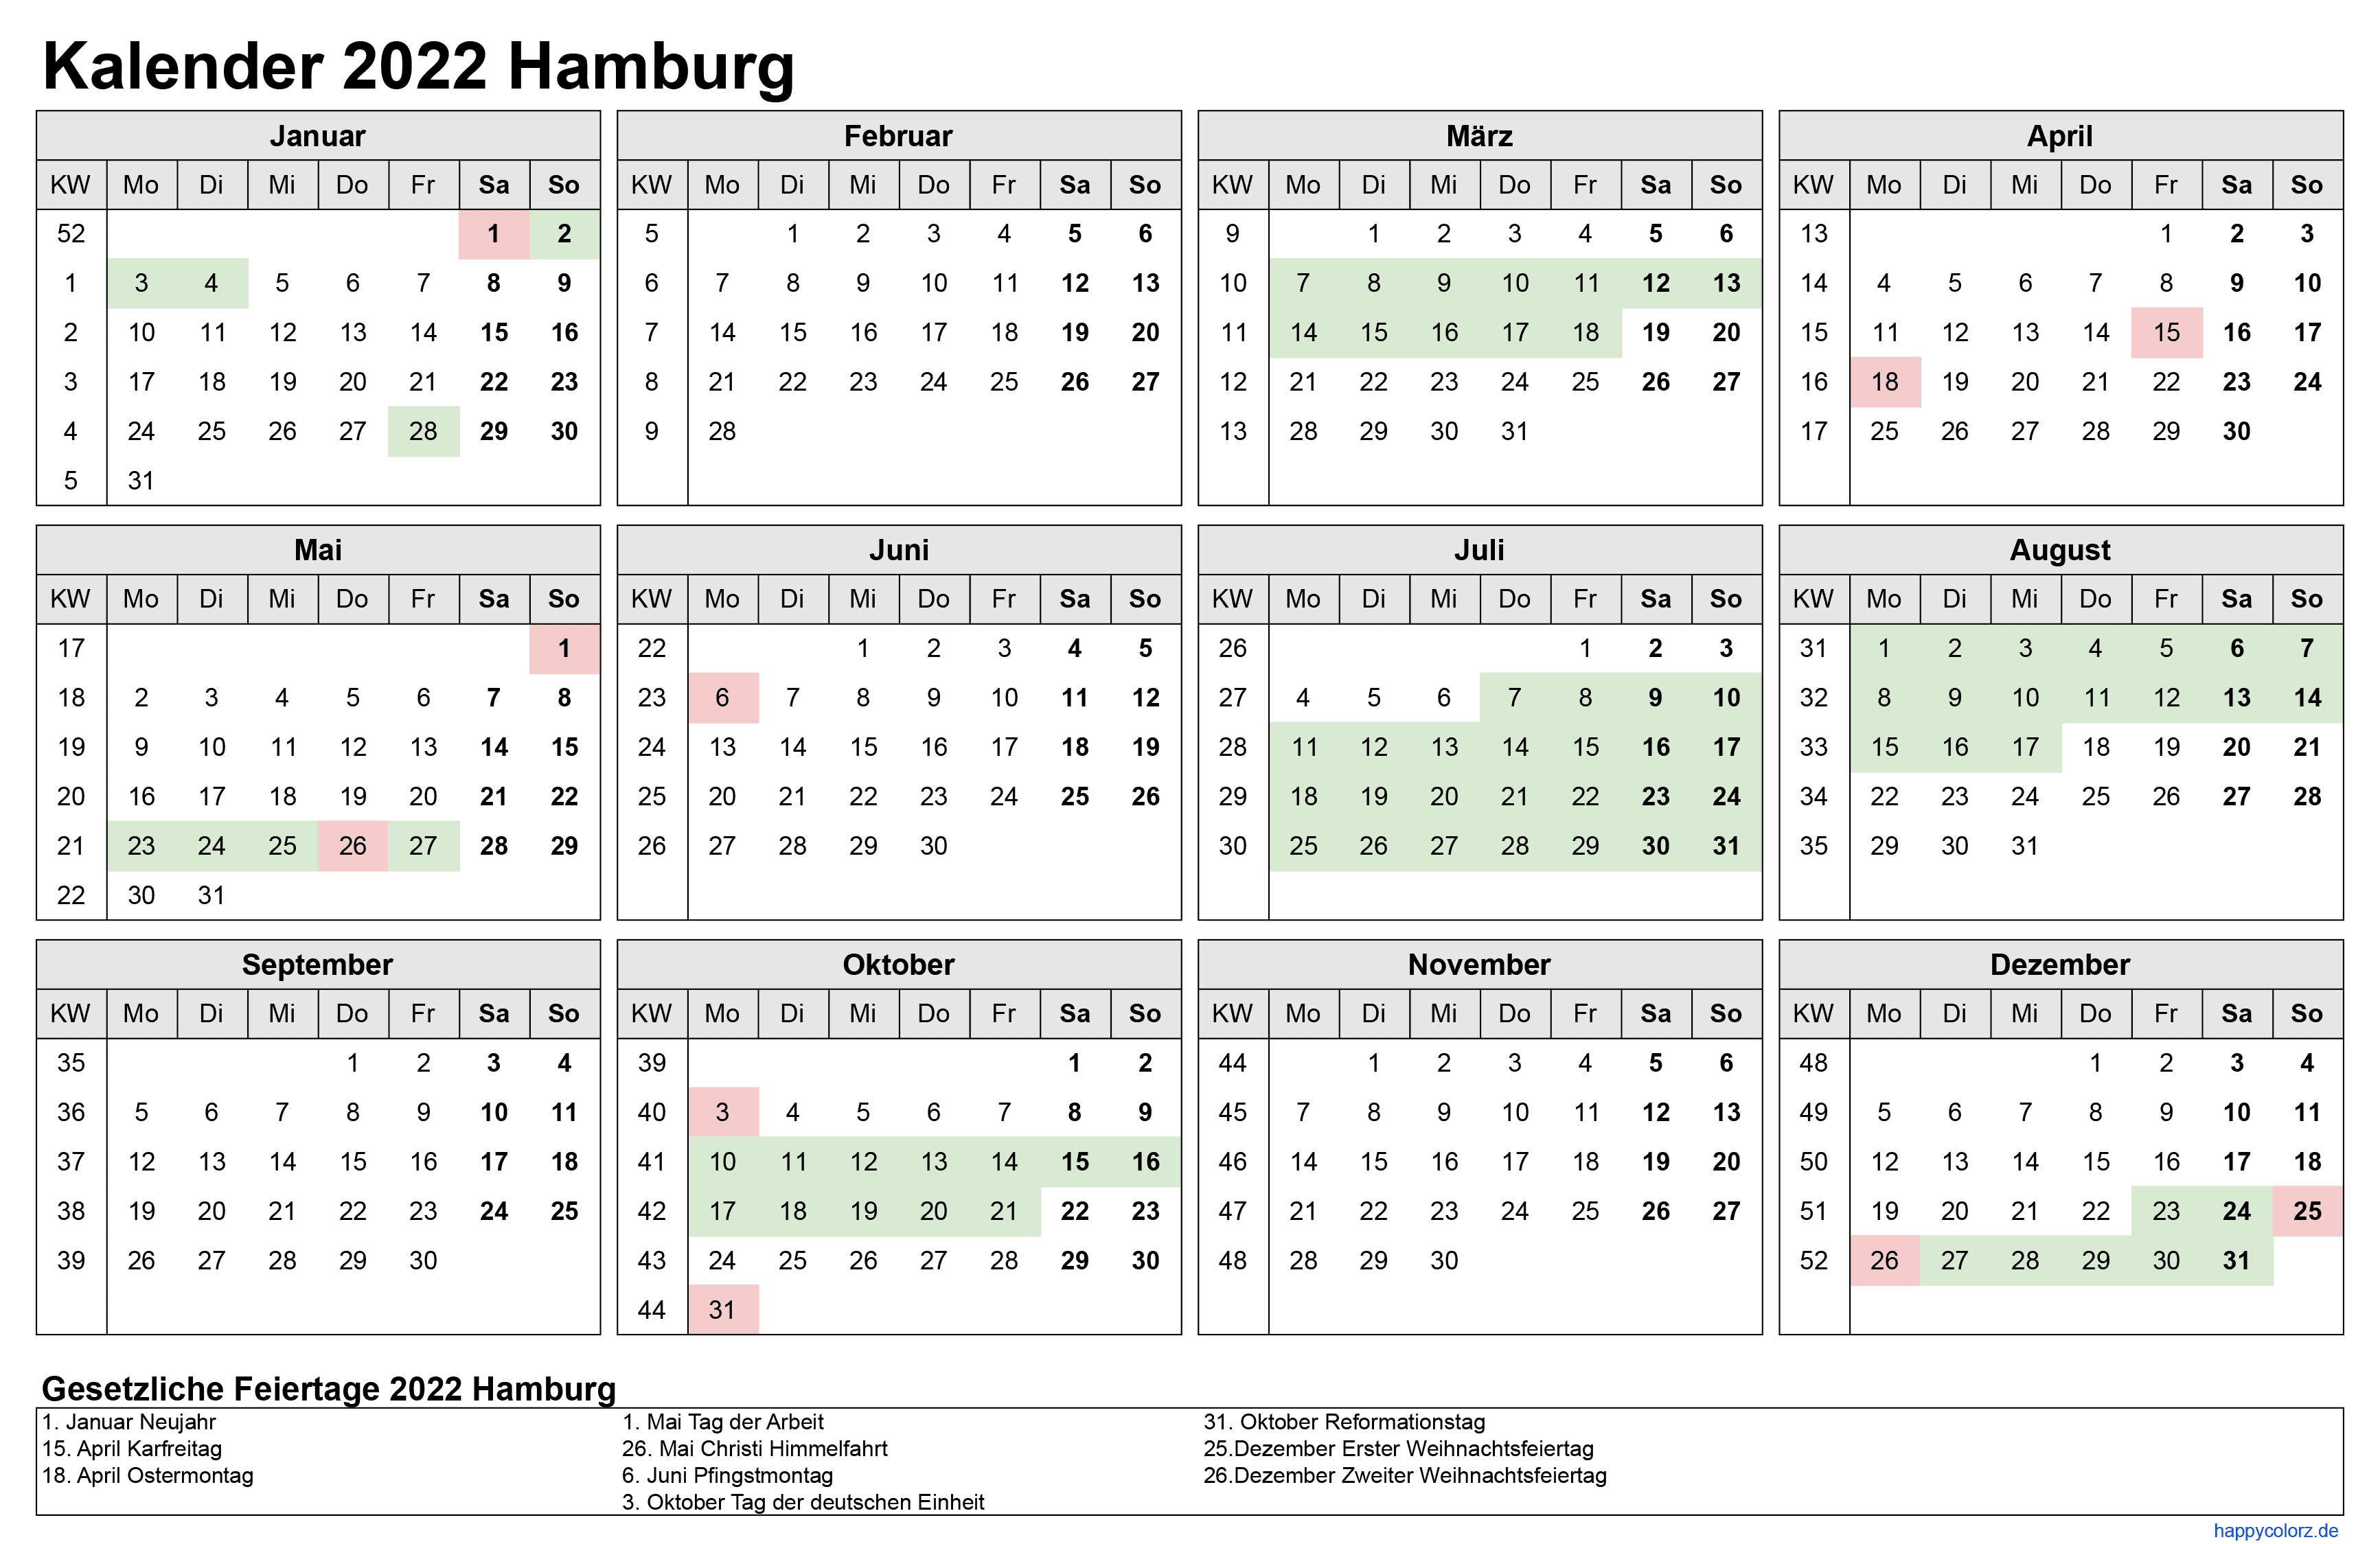 Kalender 2022 Hamburg zum Ausdrucken